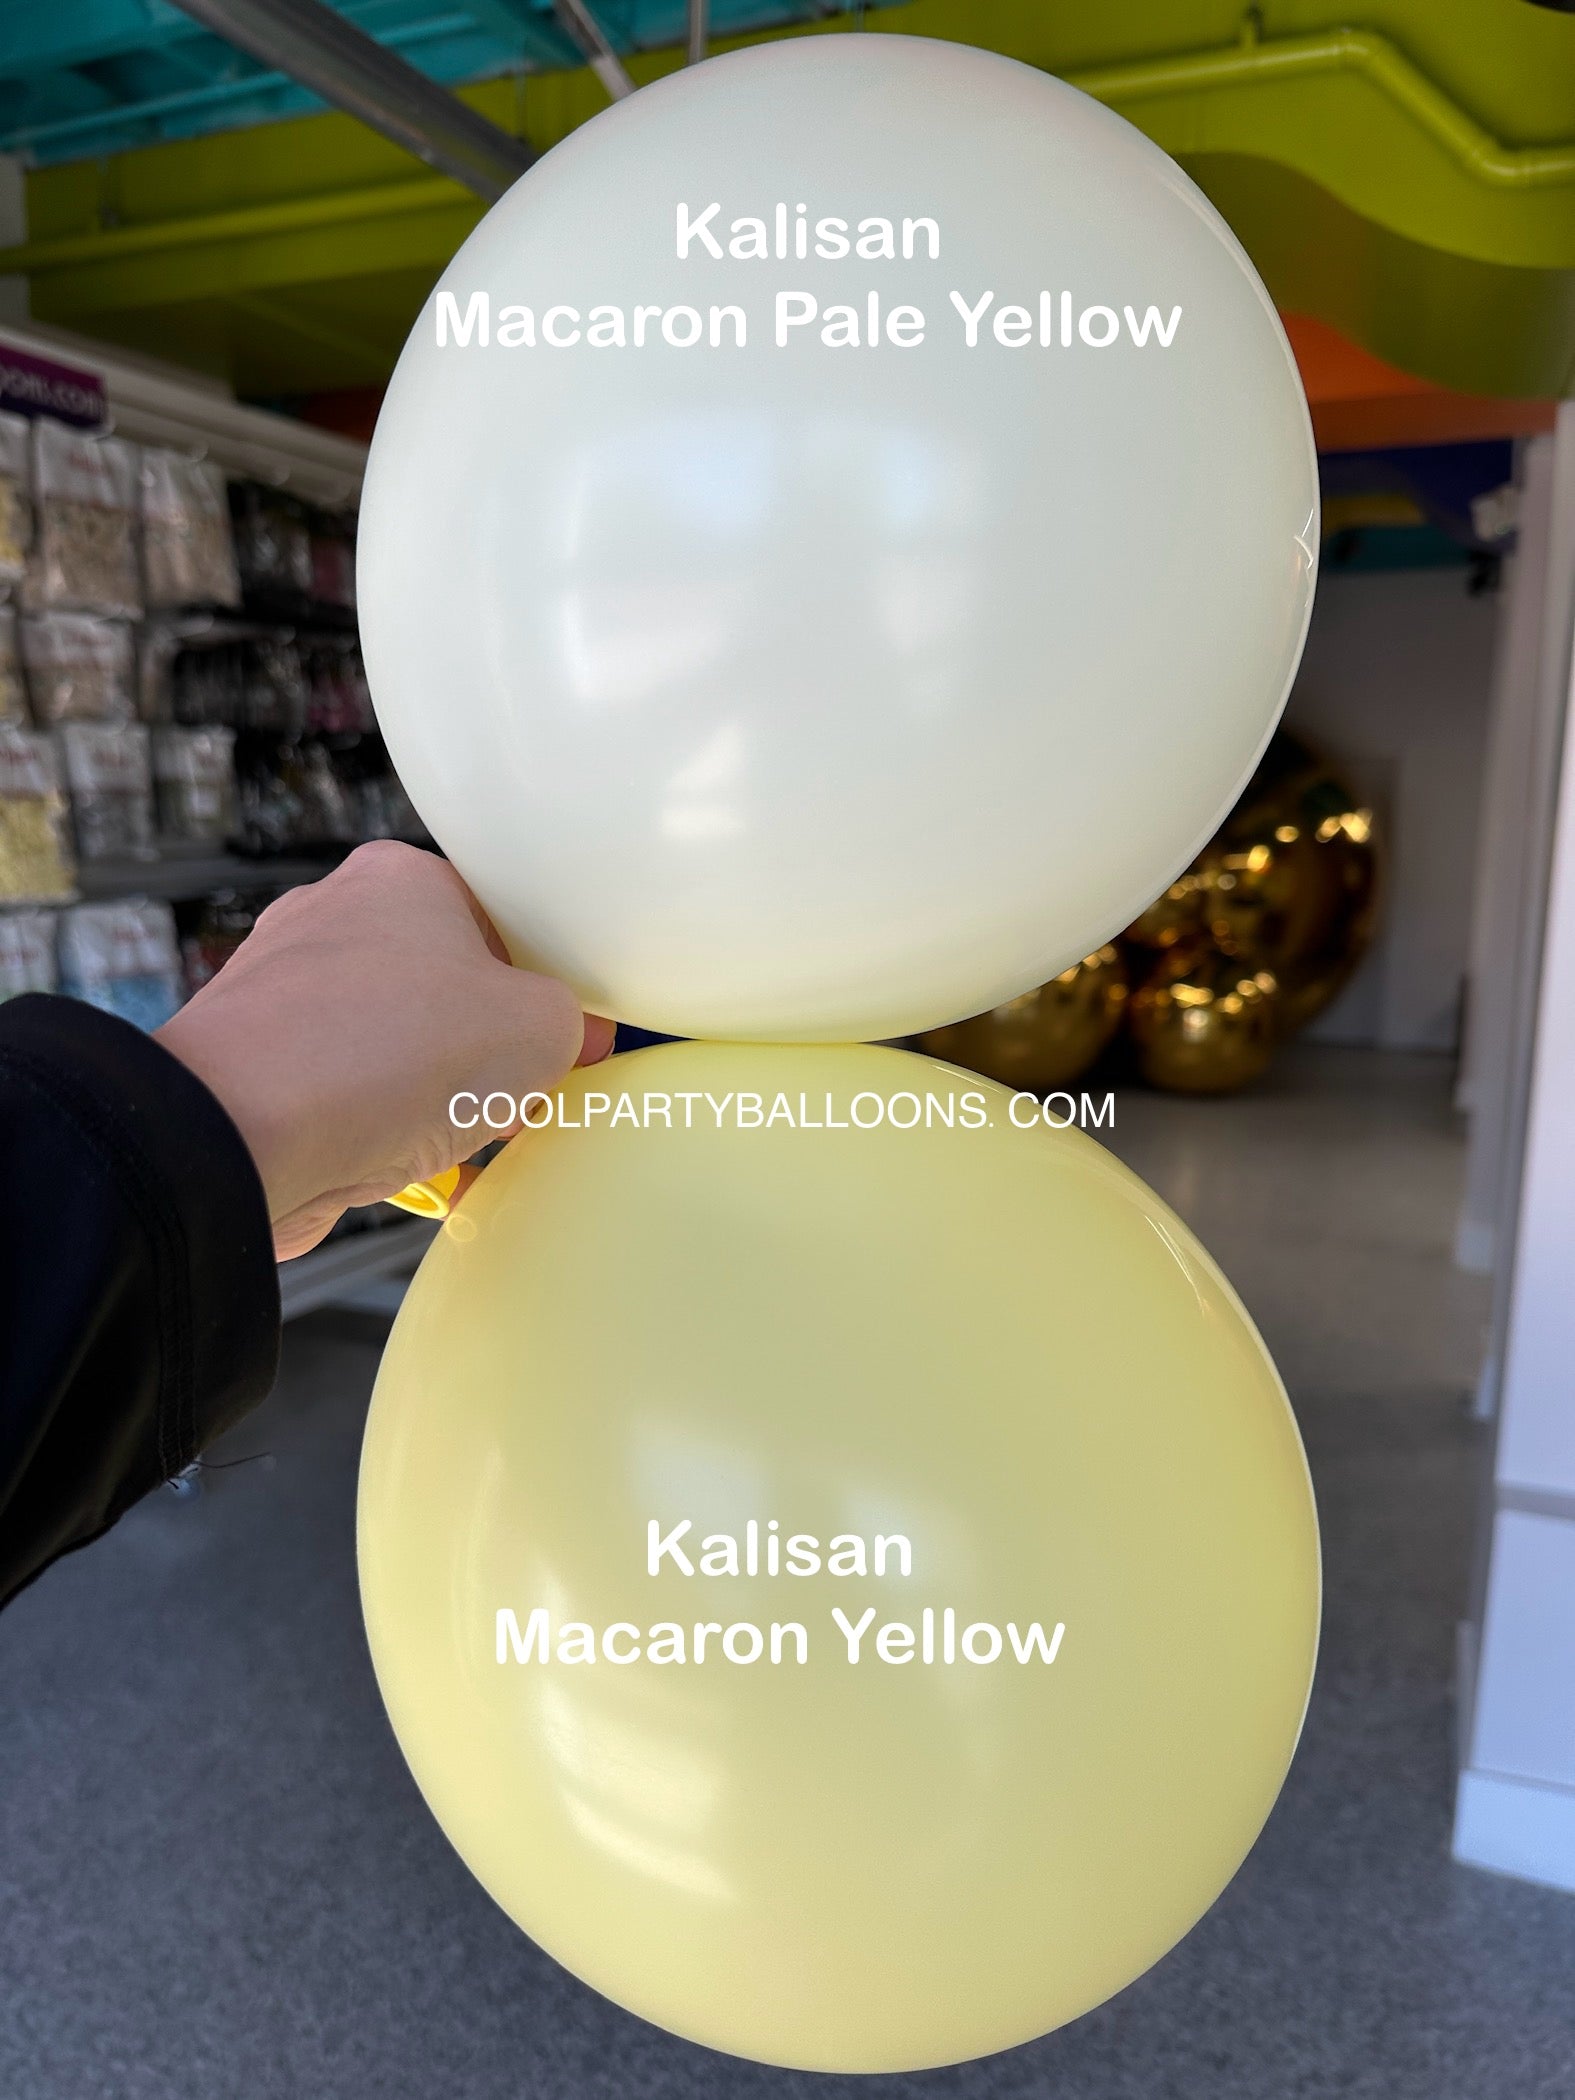 Kalisan Macaron Pale Yellow